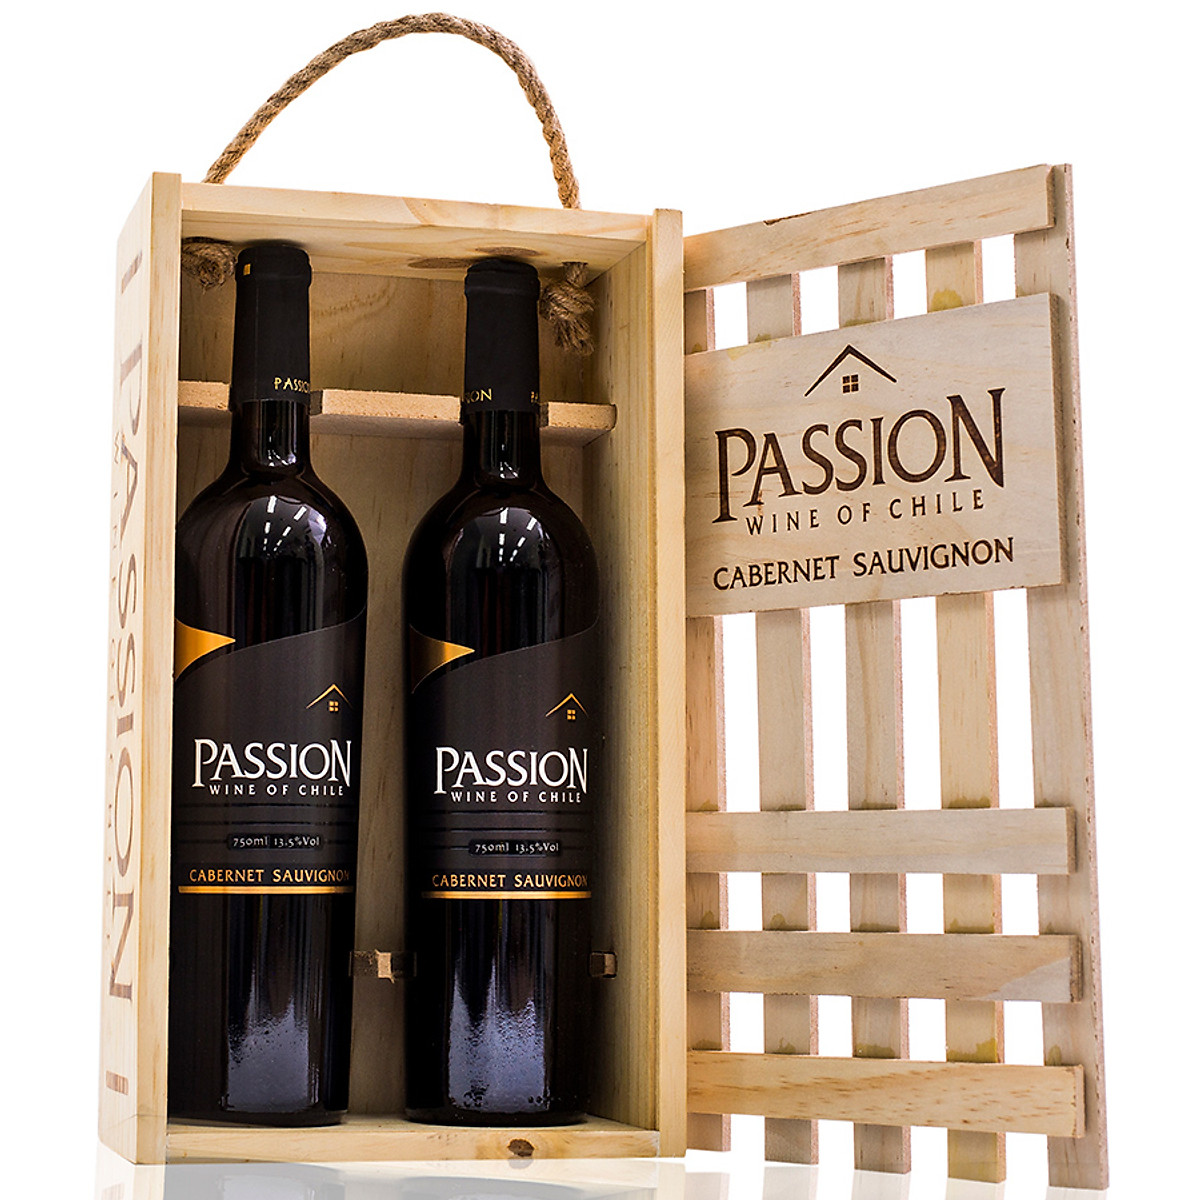 Rượu Passion Cabernet Sauvignon đựng trong hộp gỗ sang trọng 